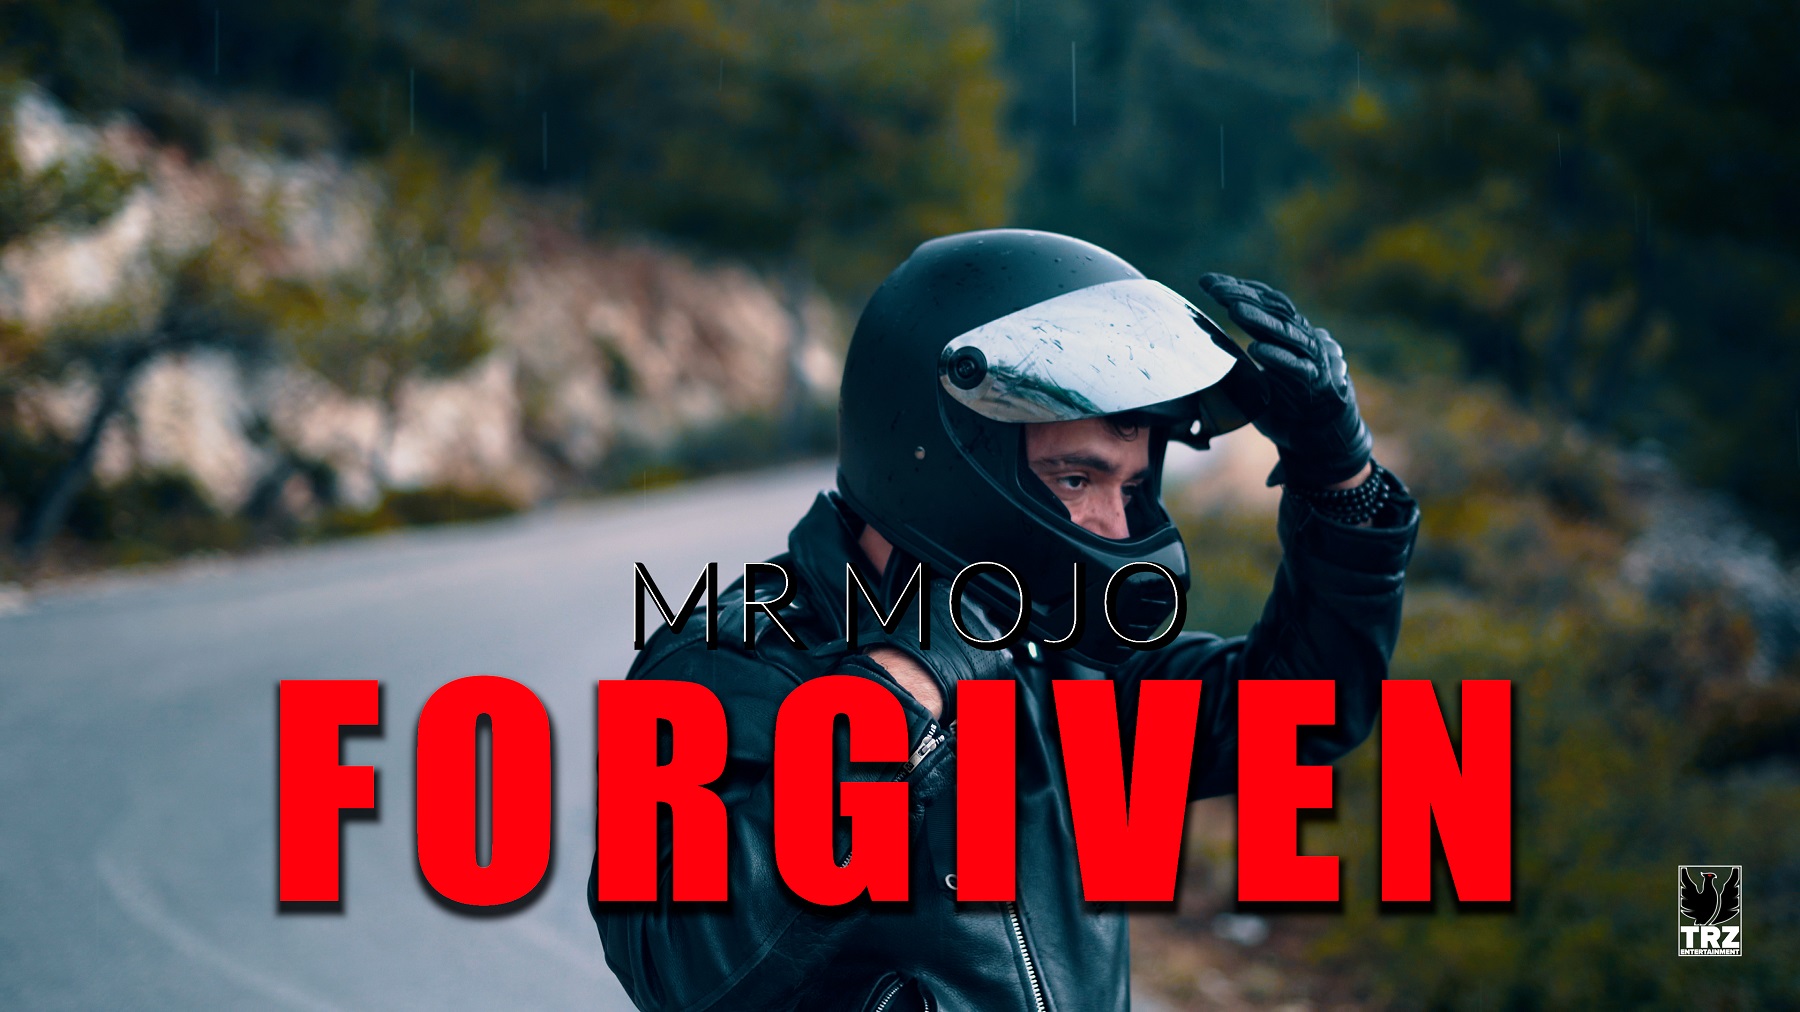 Κυκλοφορεί το νέο τραγούδι του Mr. Mojo με γενικό τίτλο ΄΄Forgiven΄΄